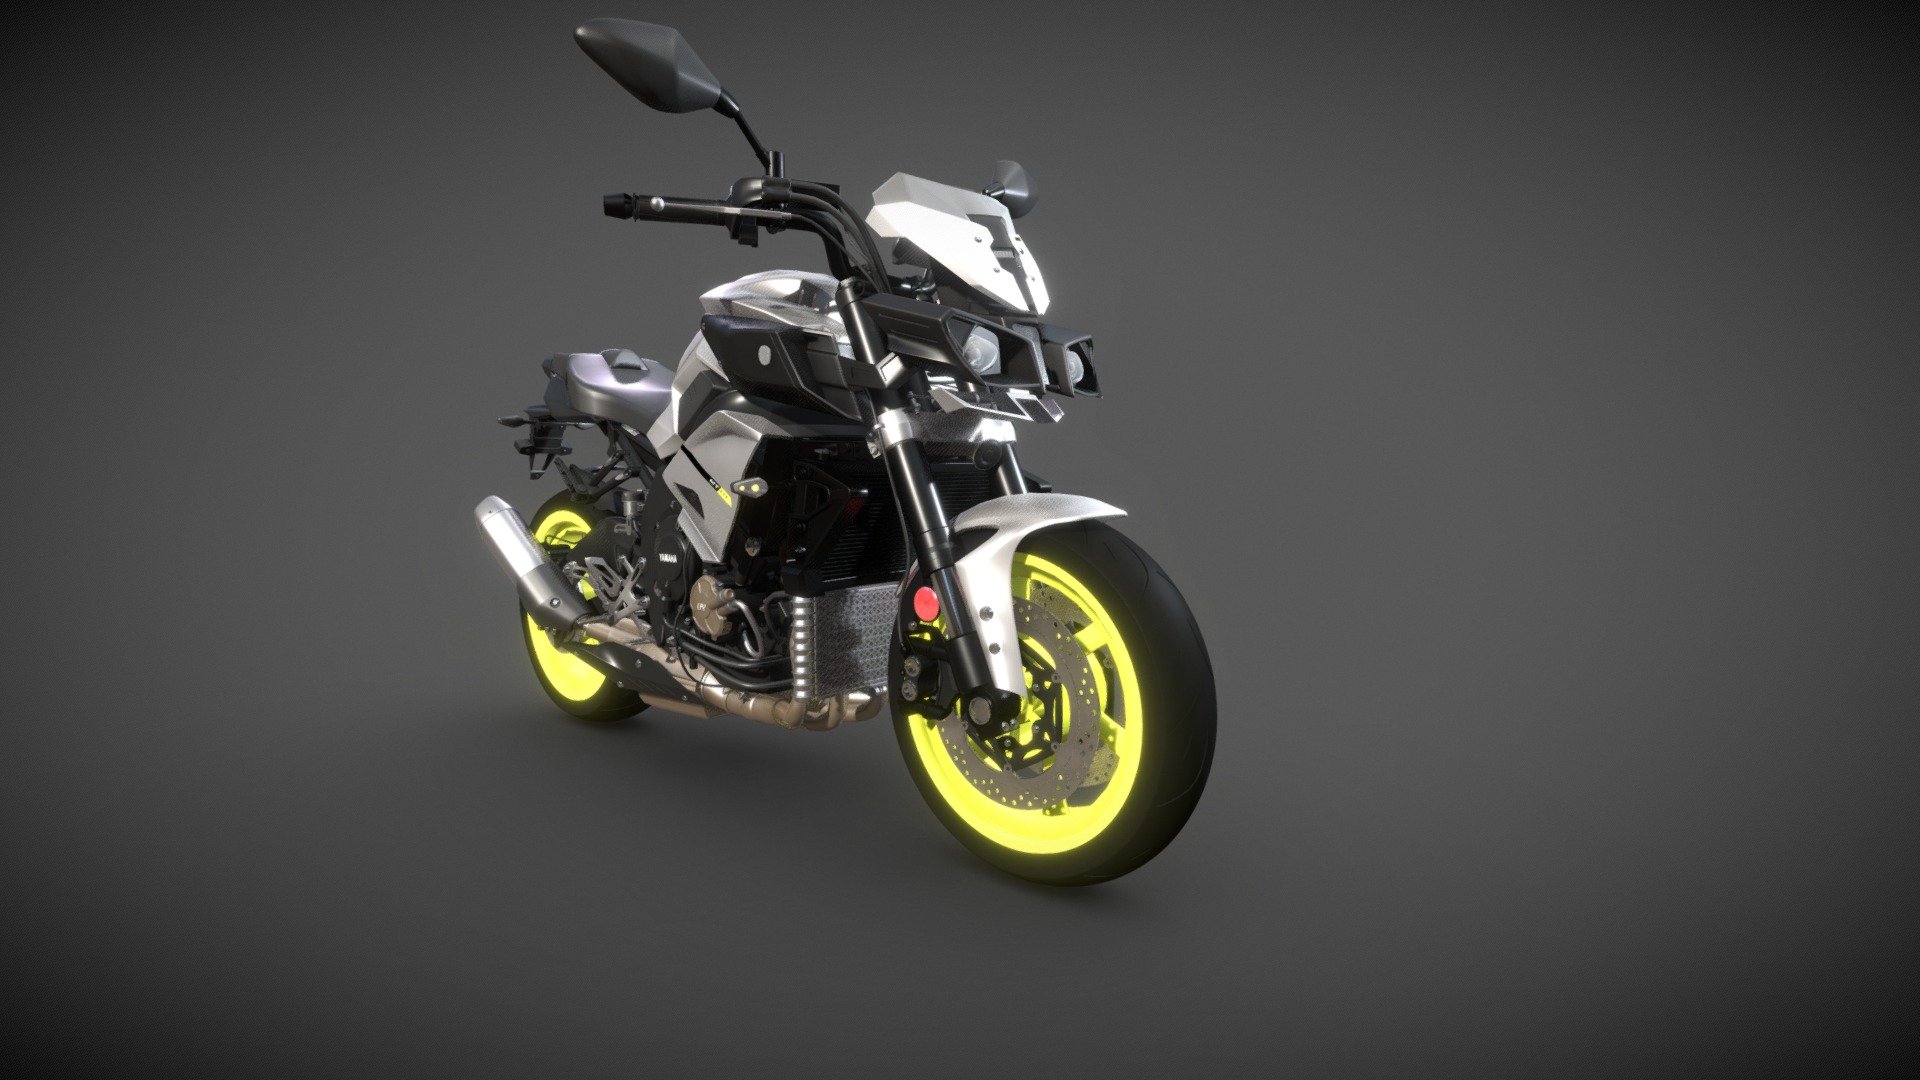 2022 Yamaha MT10 unveiled